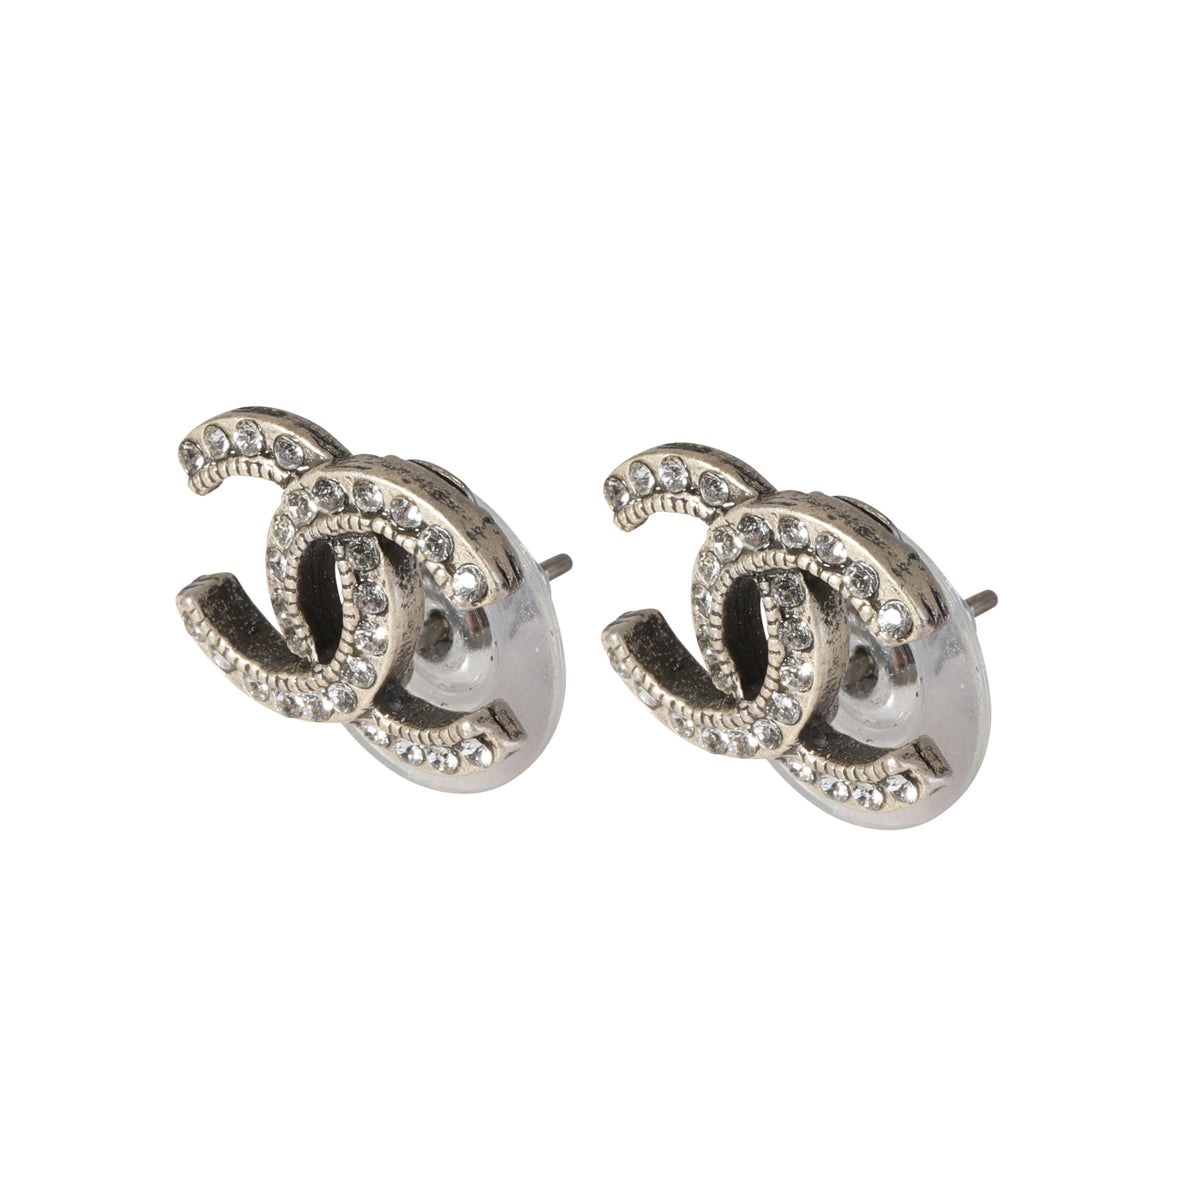 NWT 2023 B23 Chanel Strass CC Logo Silver HW Crystal Ribbon Stud Earrings